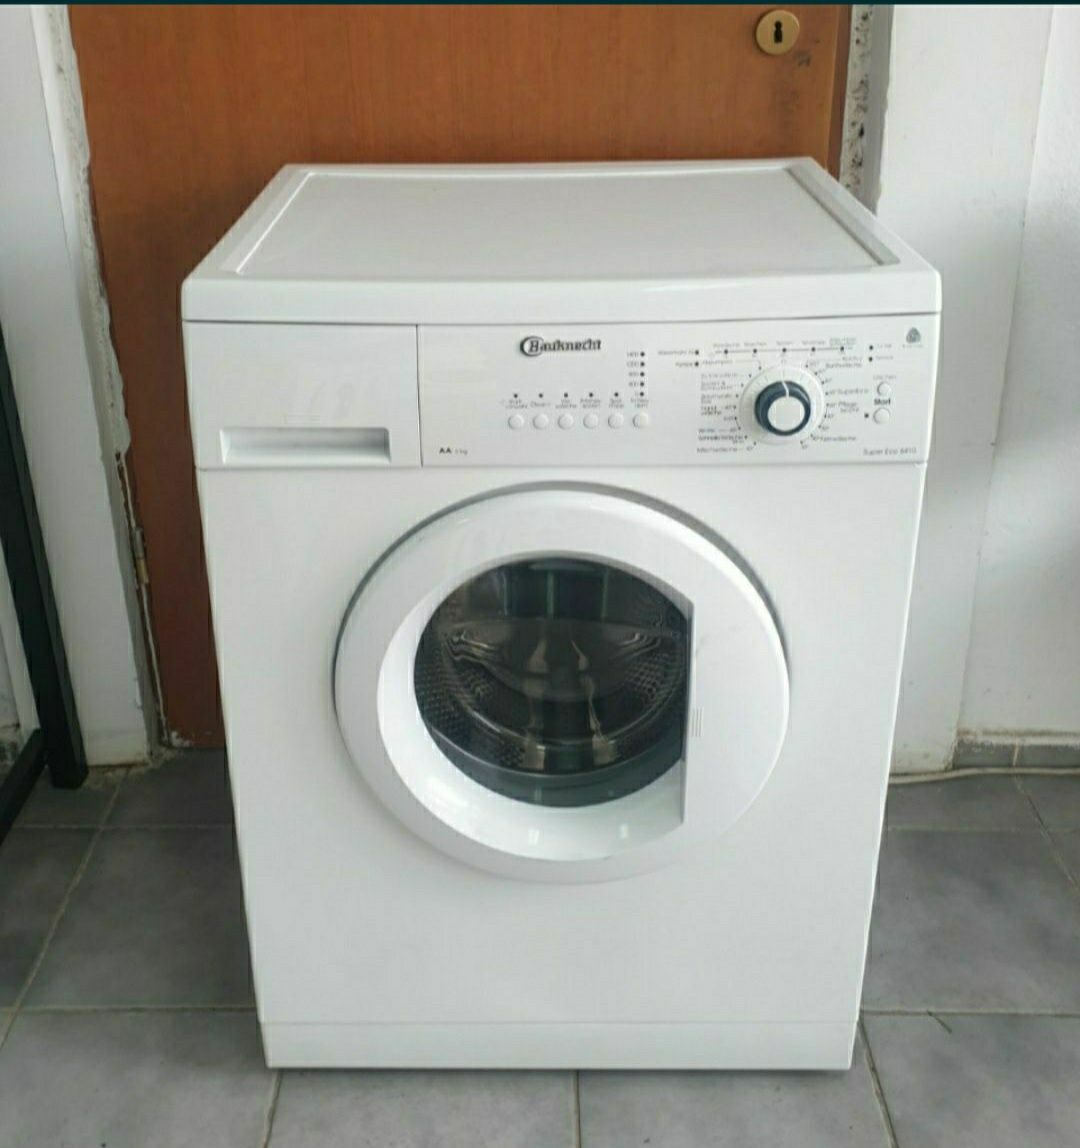 Masina de spălat rufe Bauknecht.  Wa 6000 a+ / import Germania